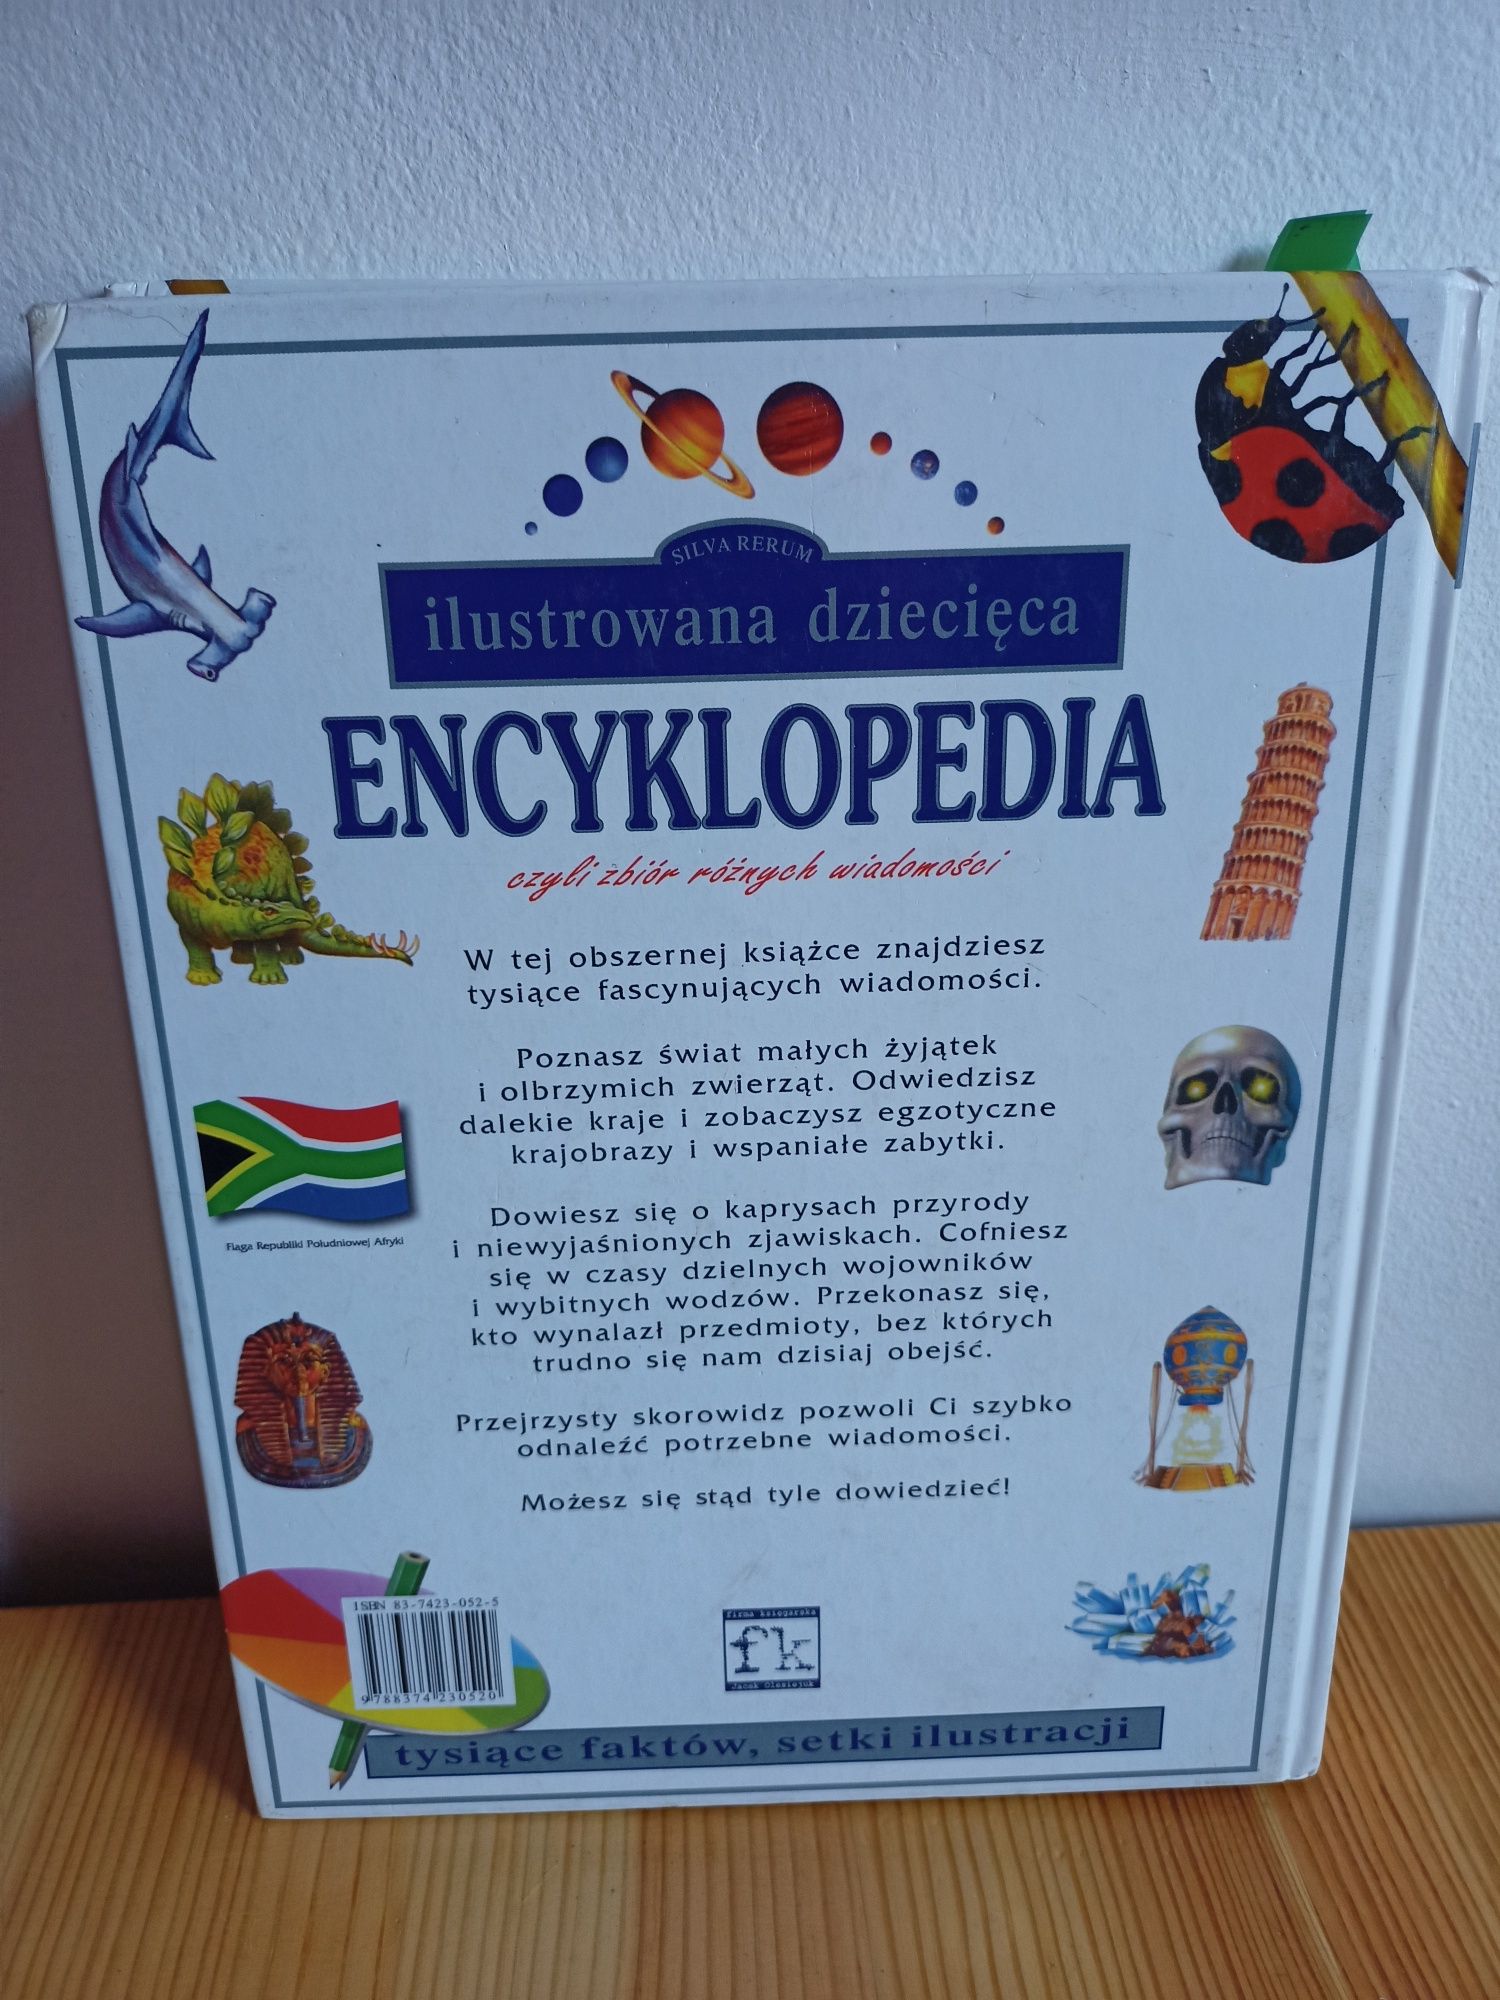 Encyklopedia ilustrowana dziecięca 335 stron, gruba okładka